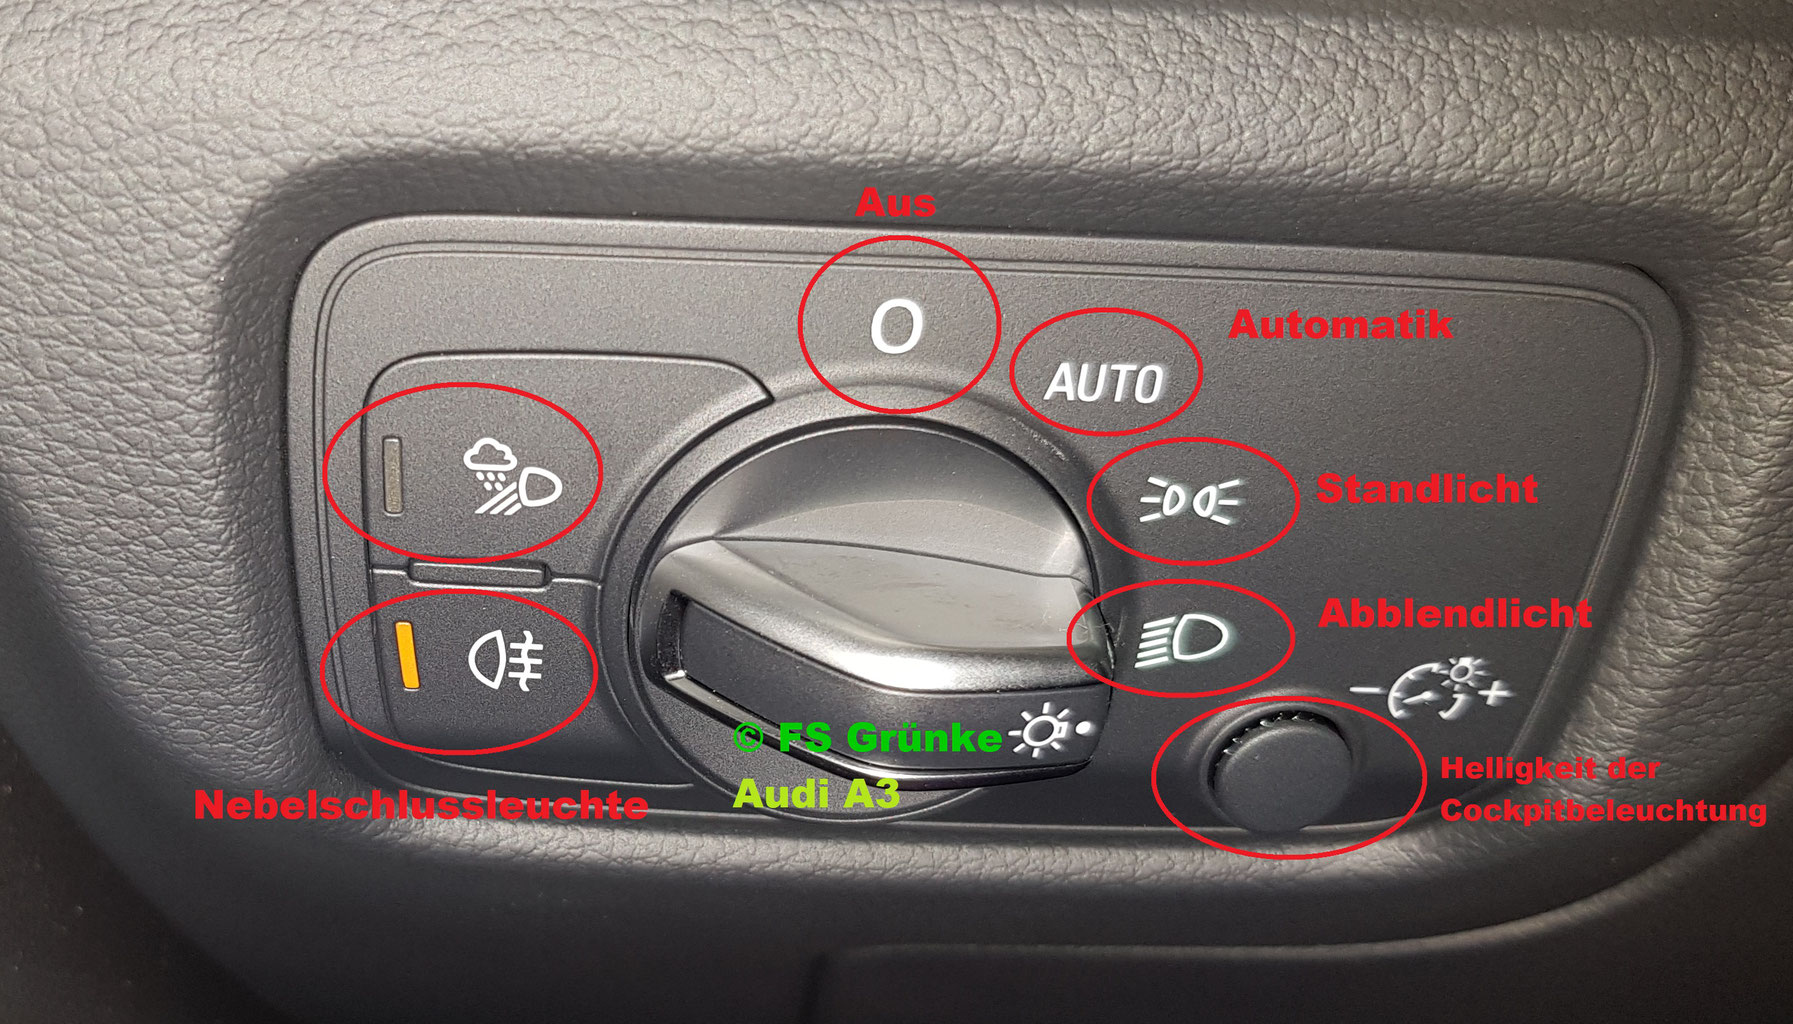 Lichter am Auto: Wann welches Autolicht einschalten?